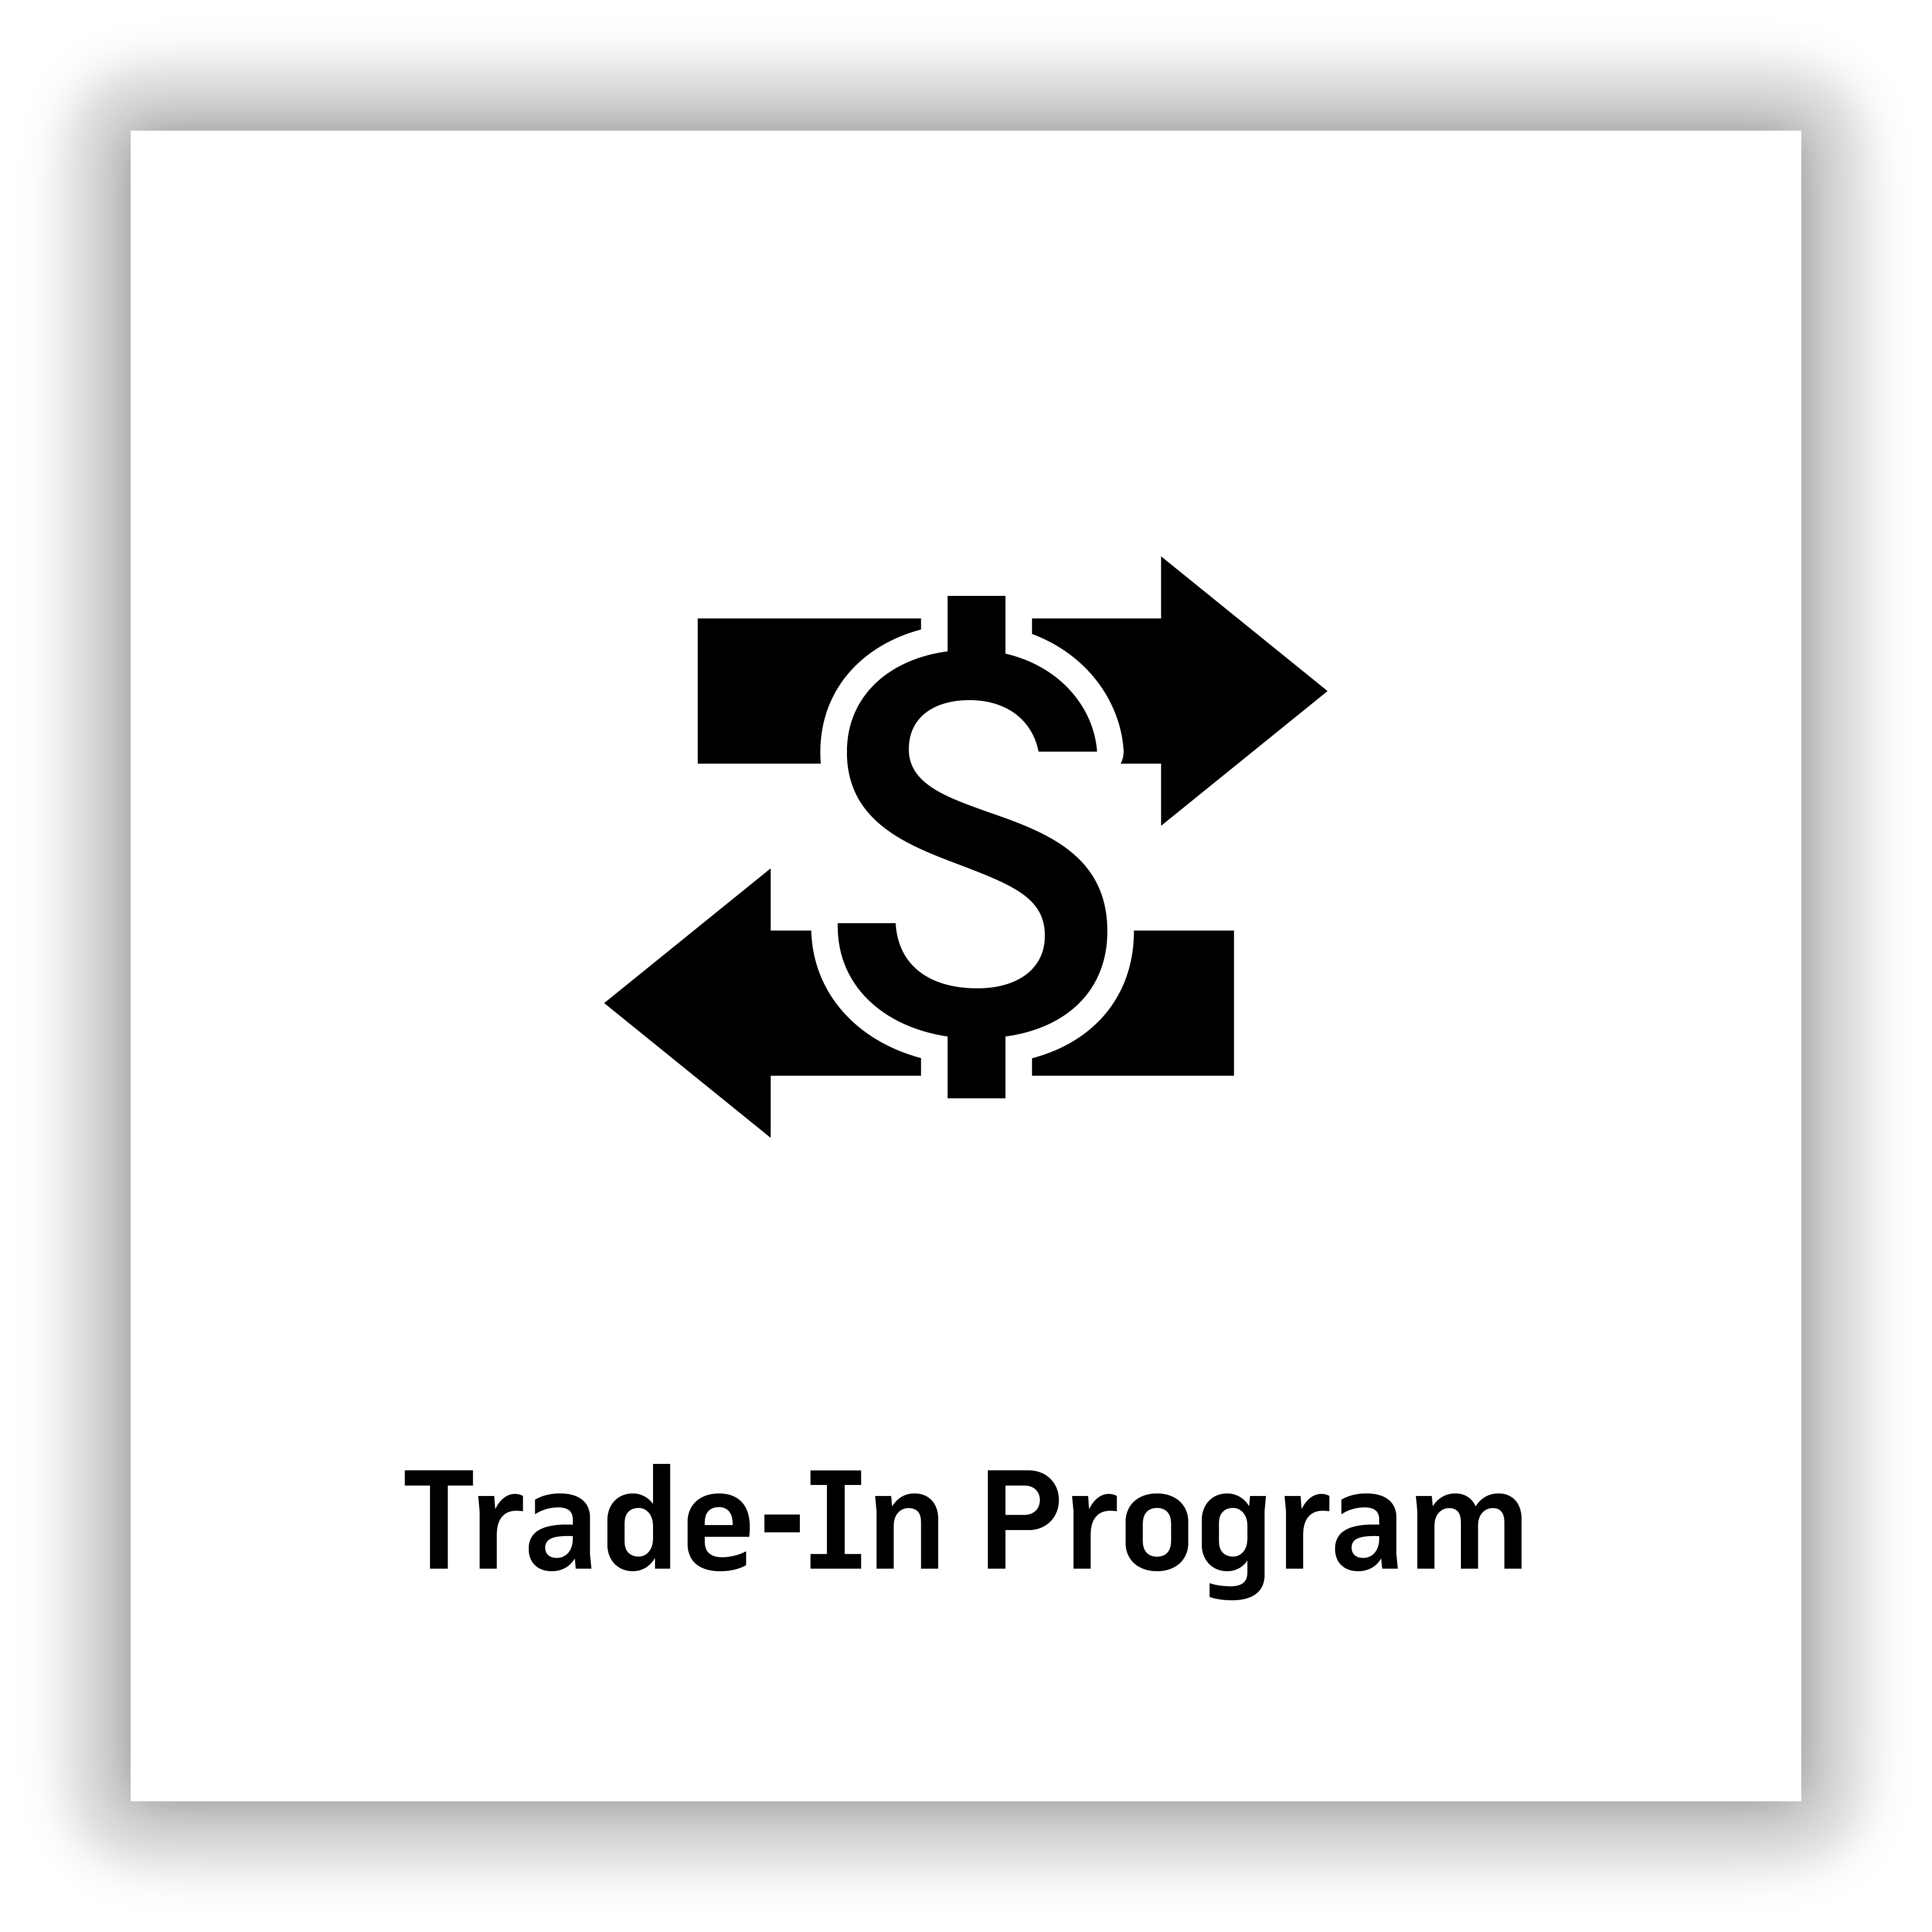 Trade-In Program